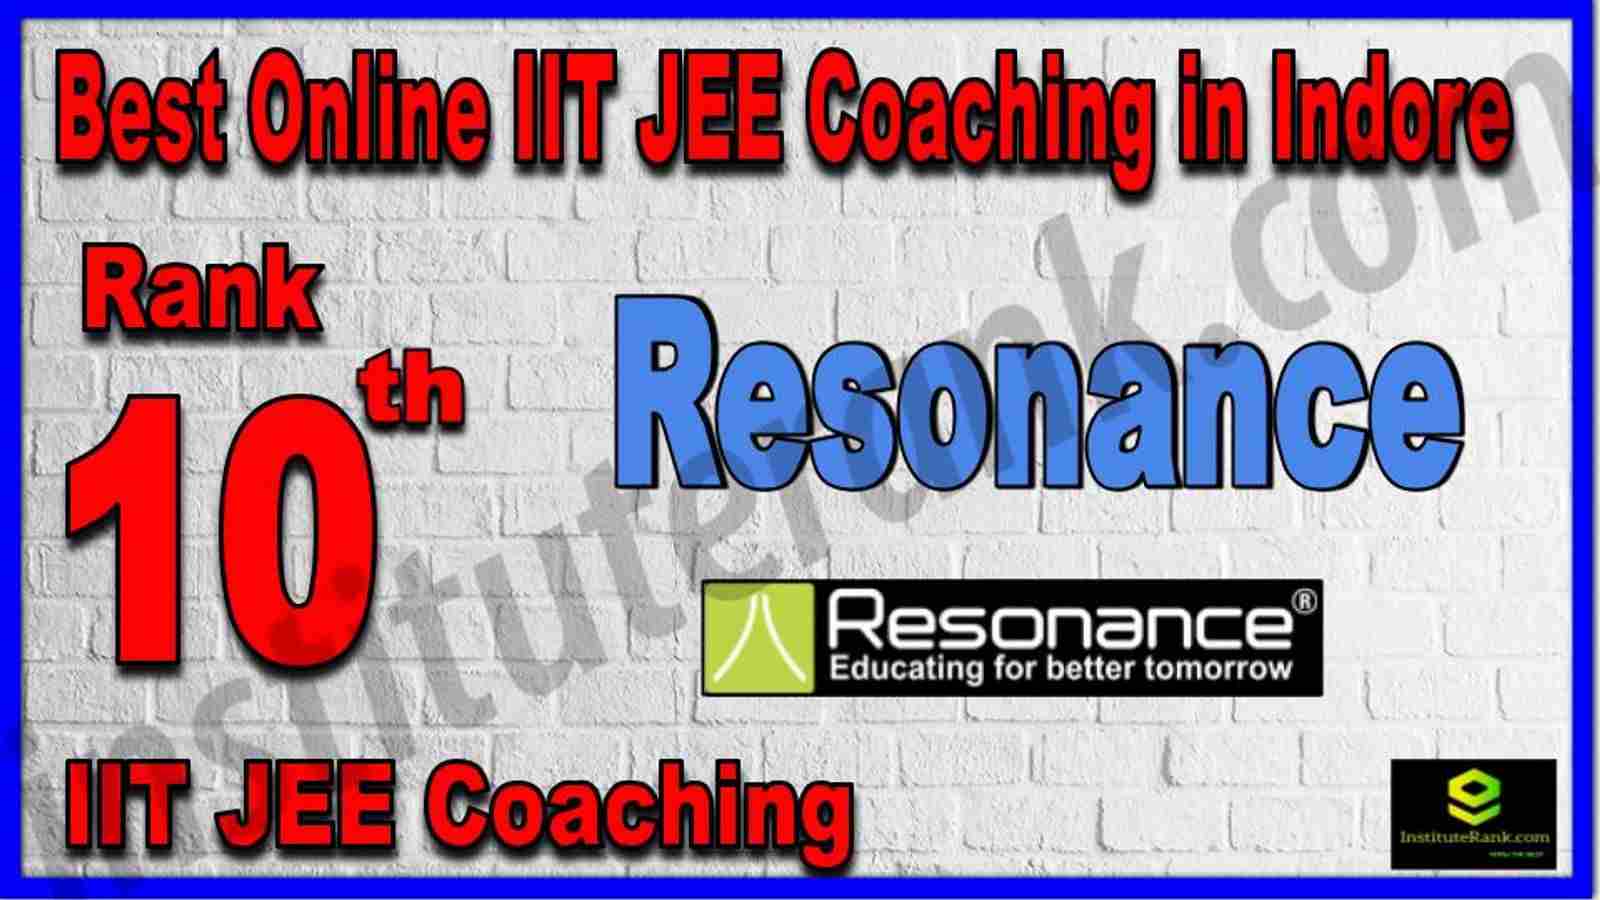 Rank 10th Best Online IIT JEE Coaching in Indore